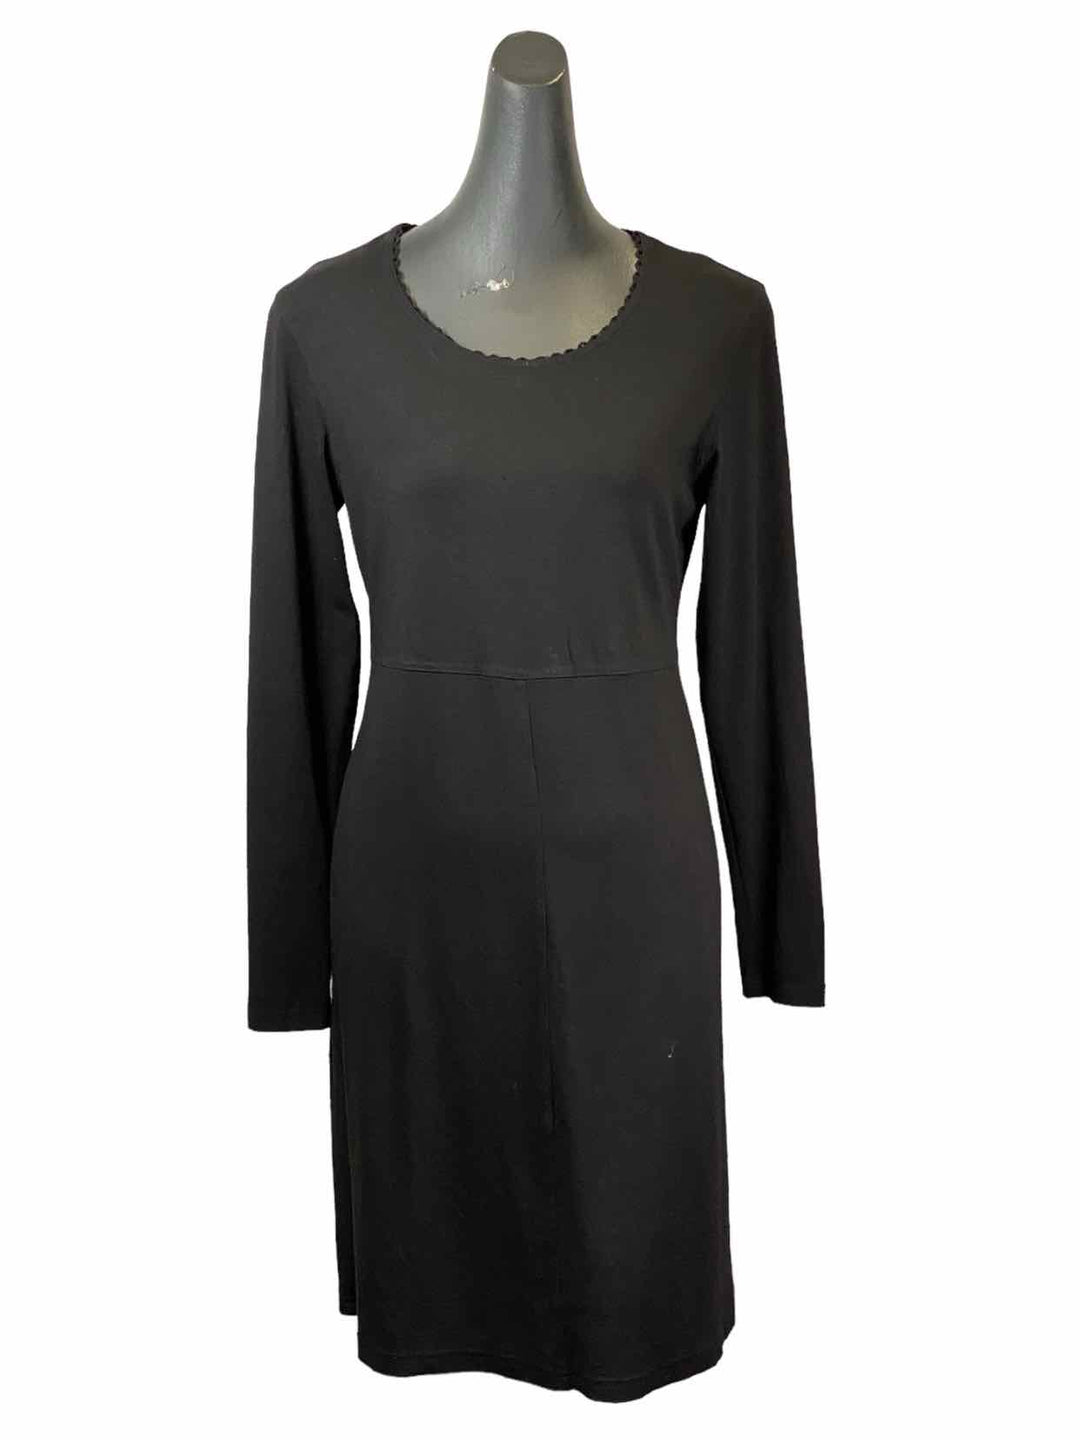 J Jill Size S Black Dress